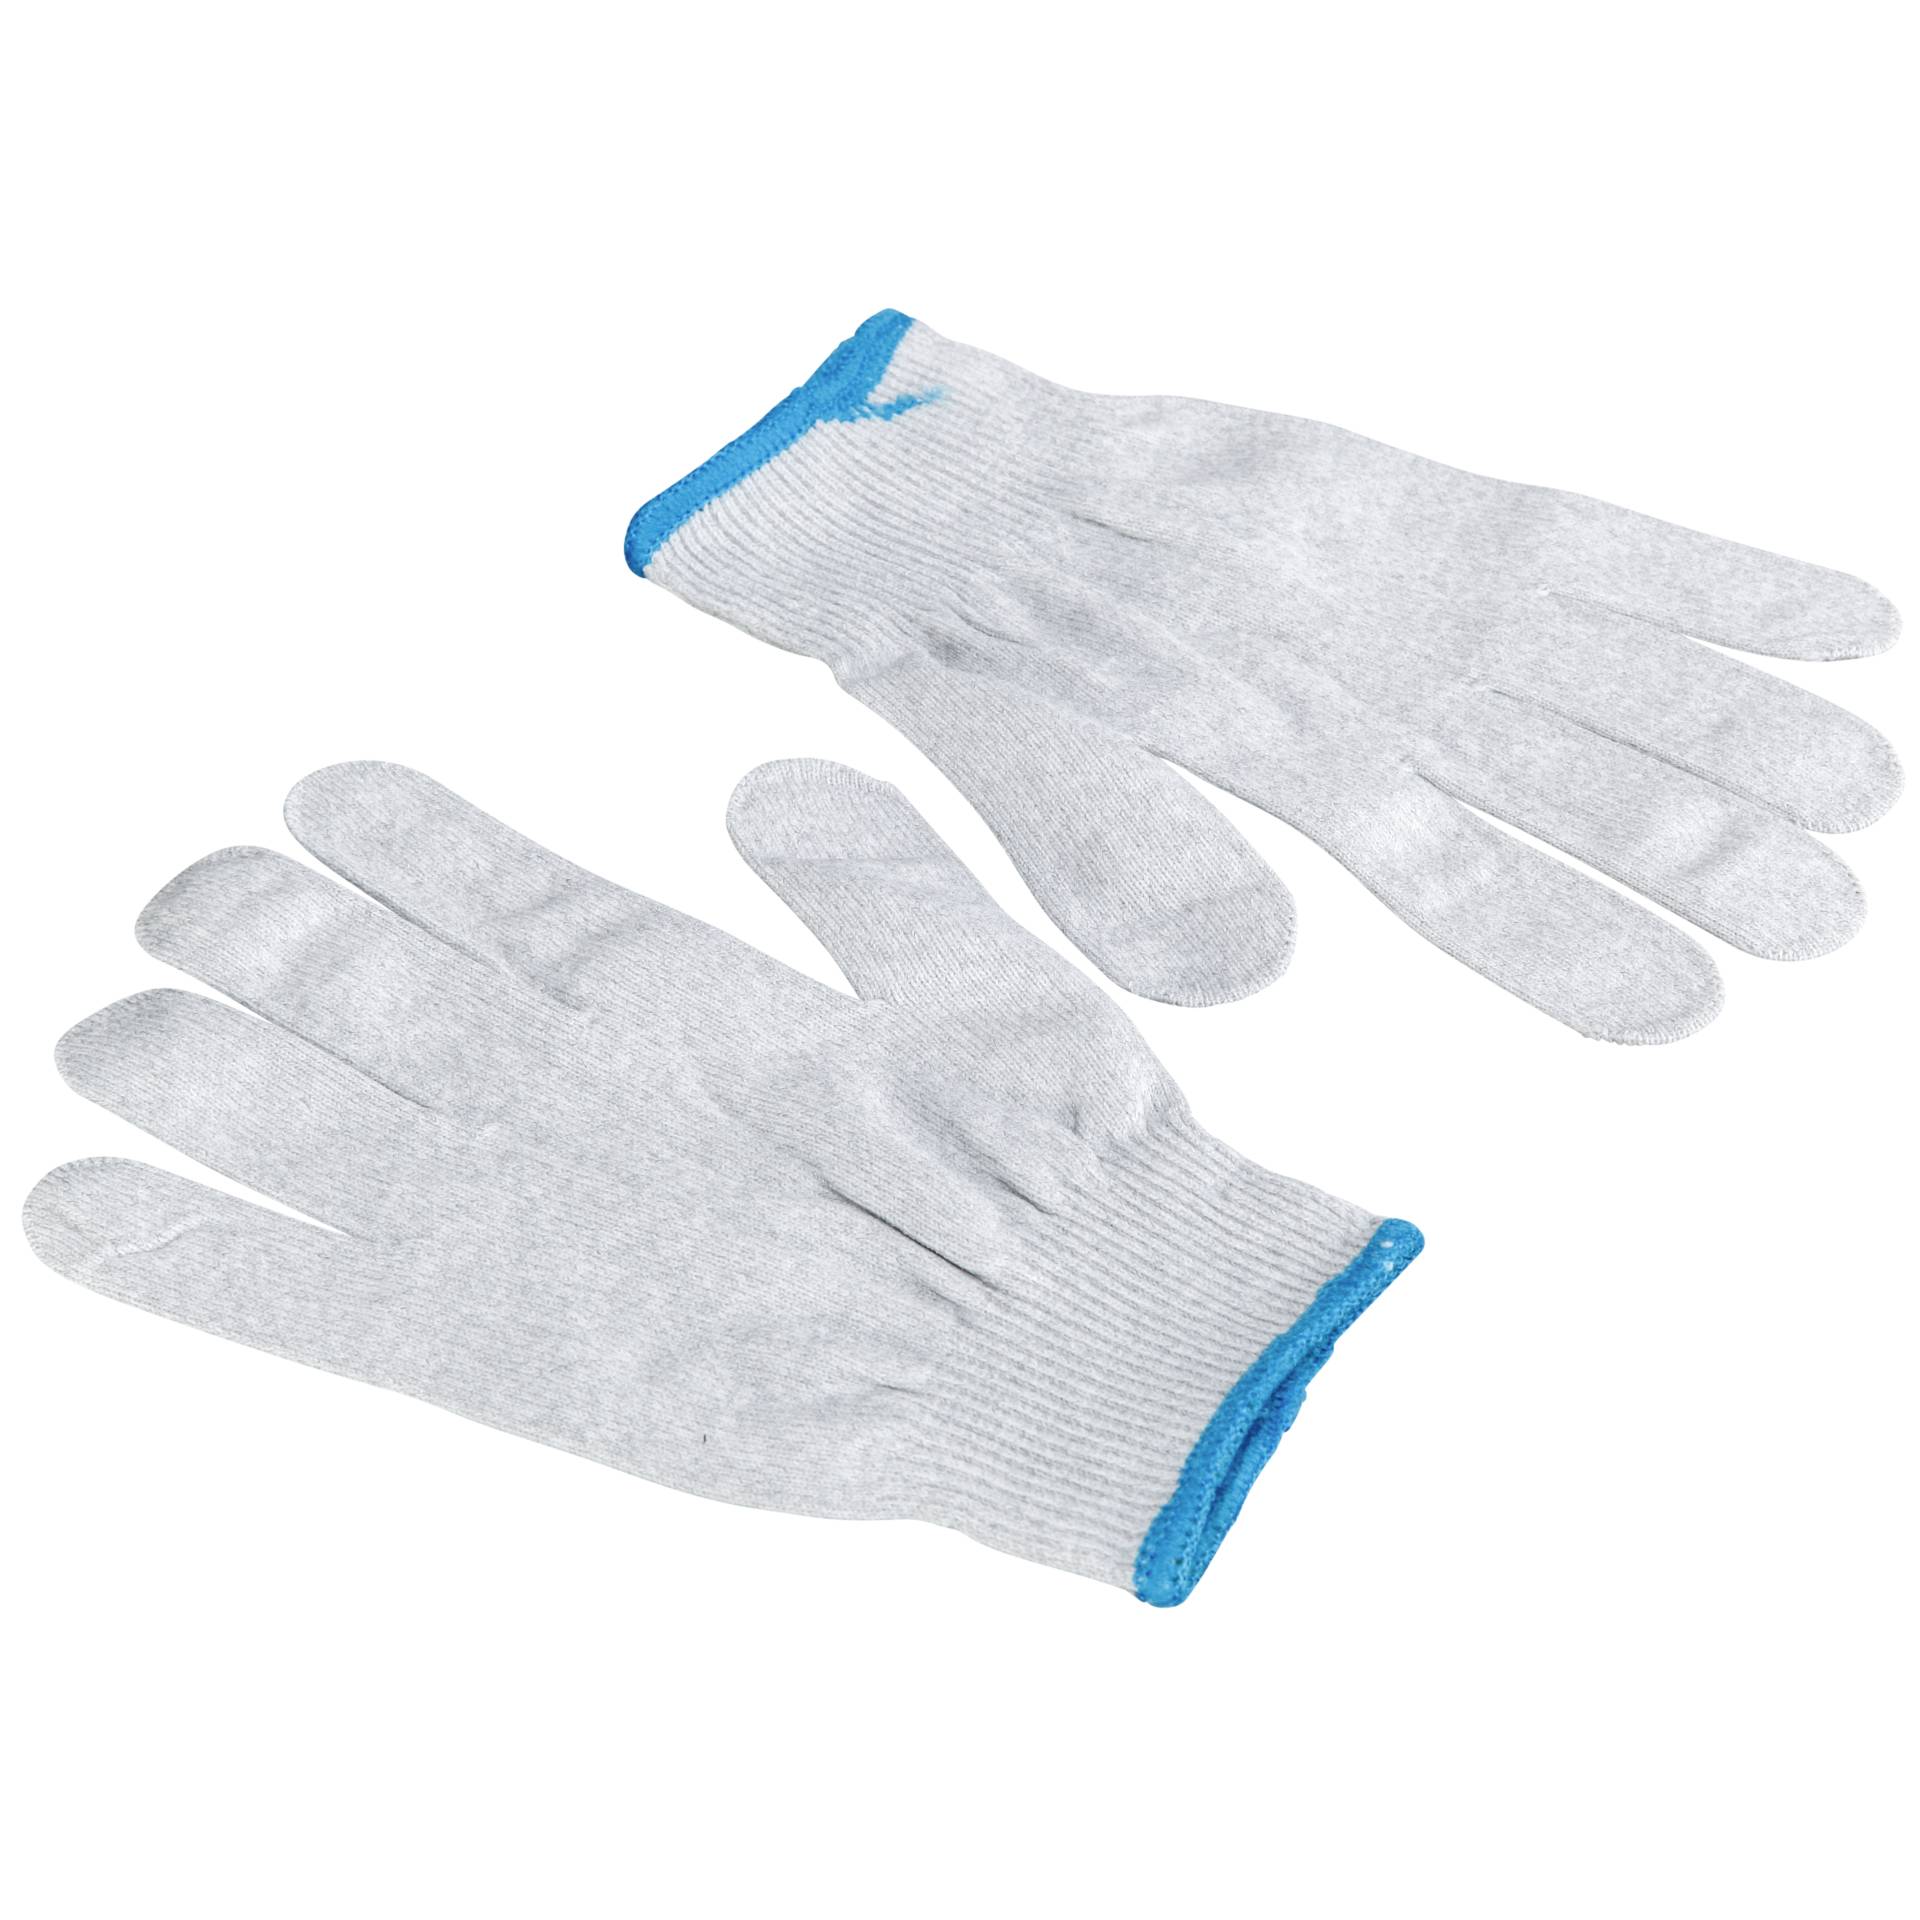 Aqua+ Glove White S